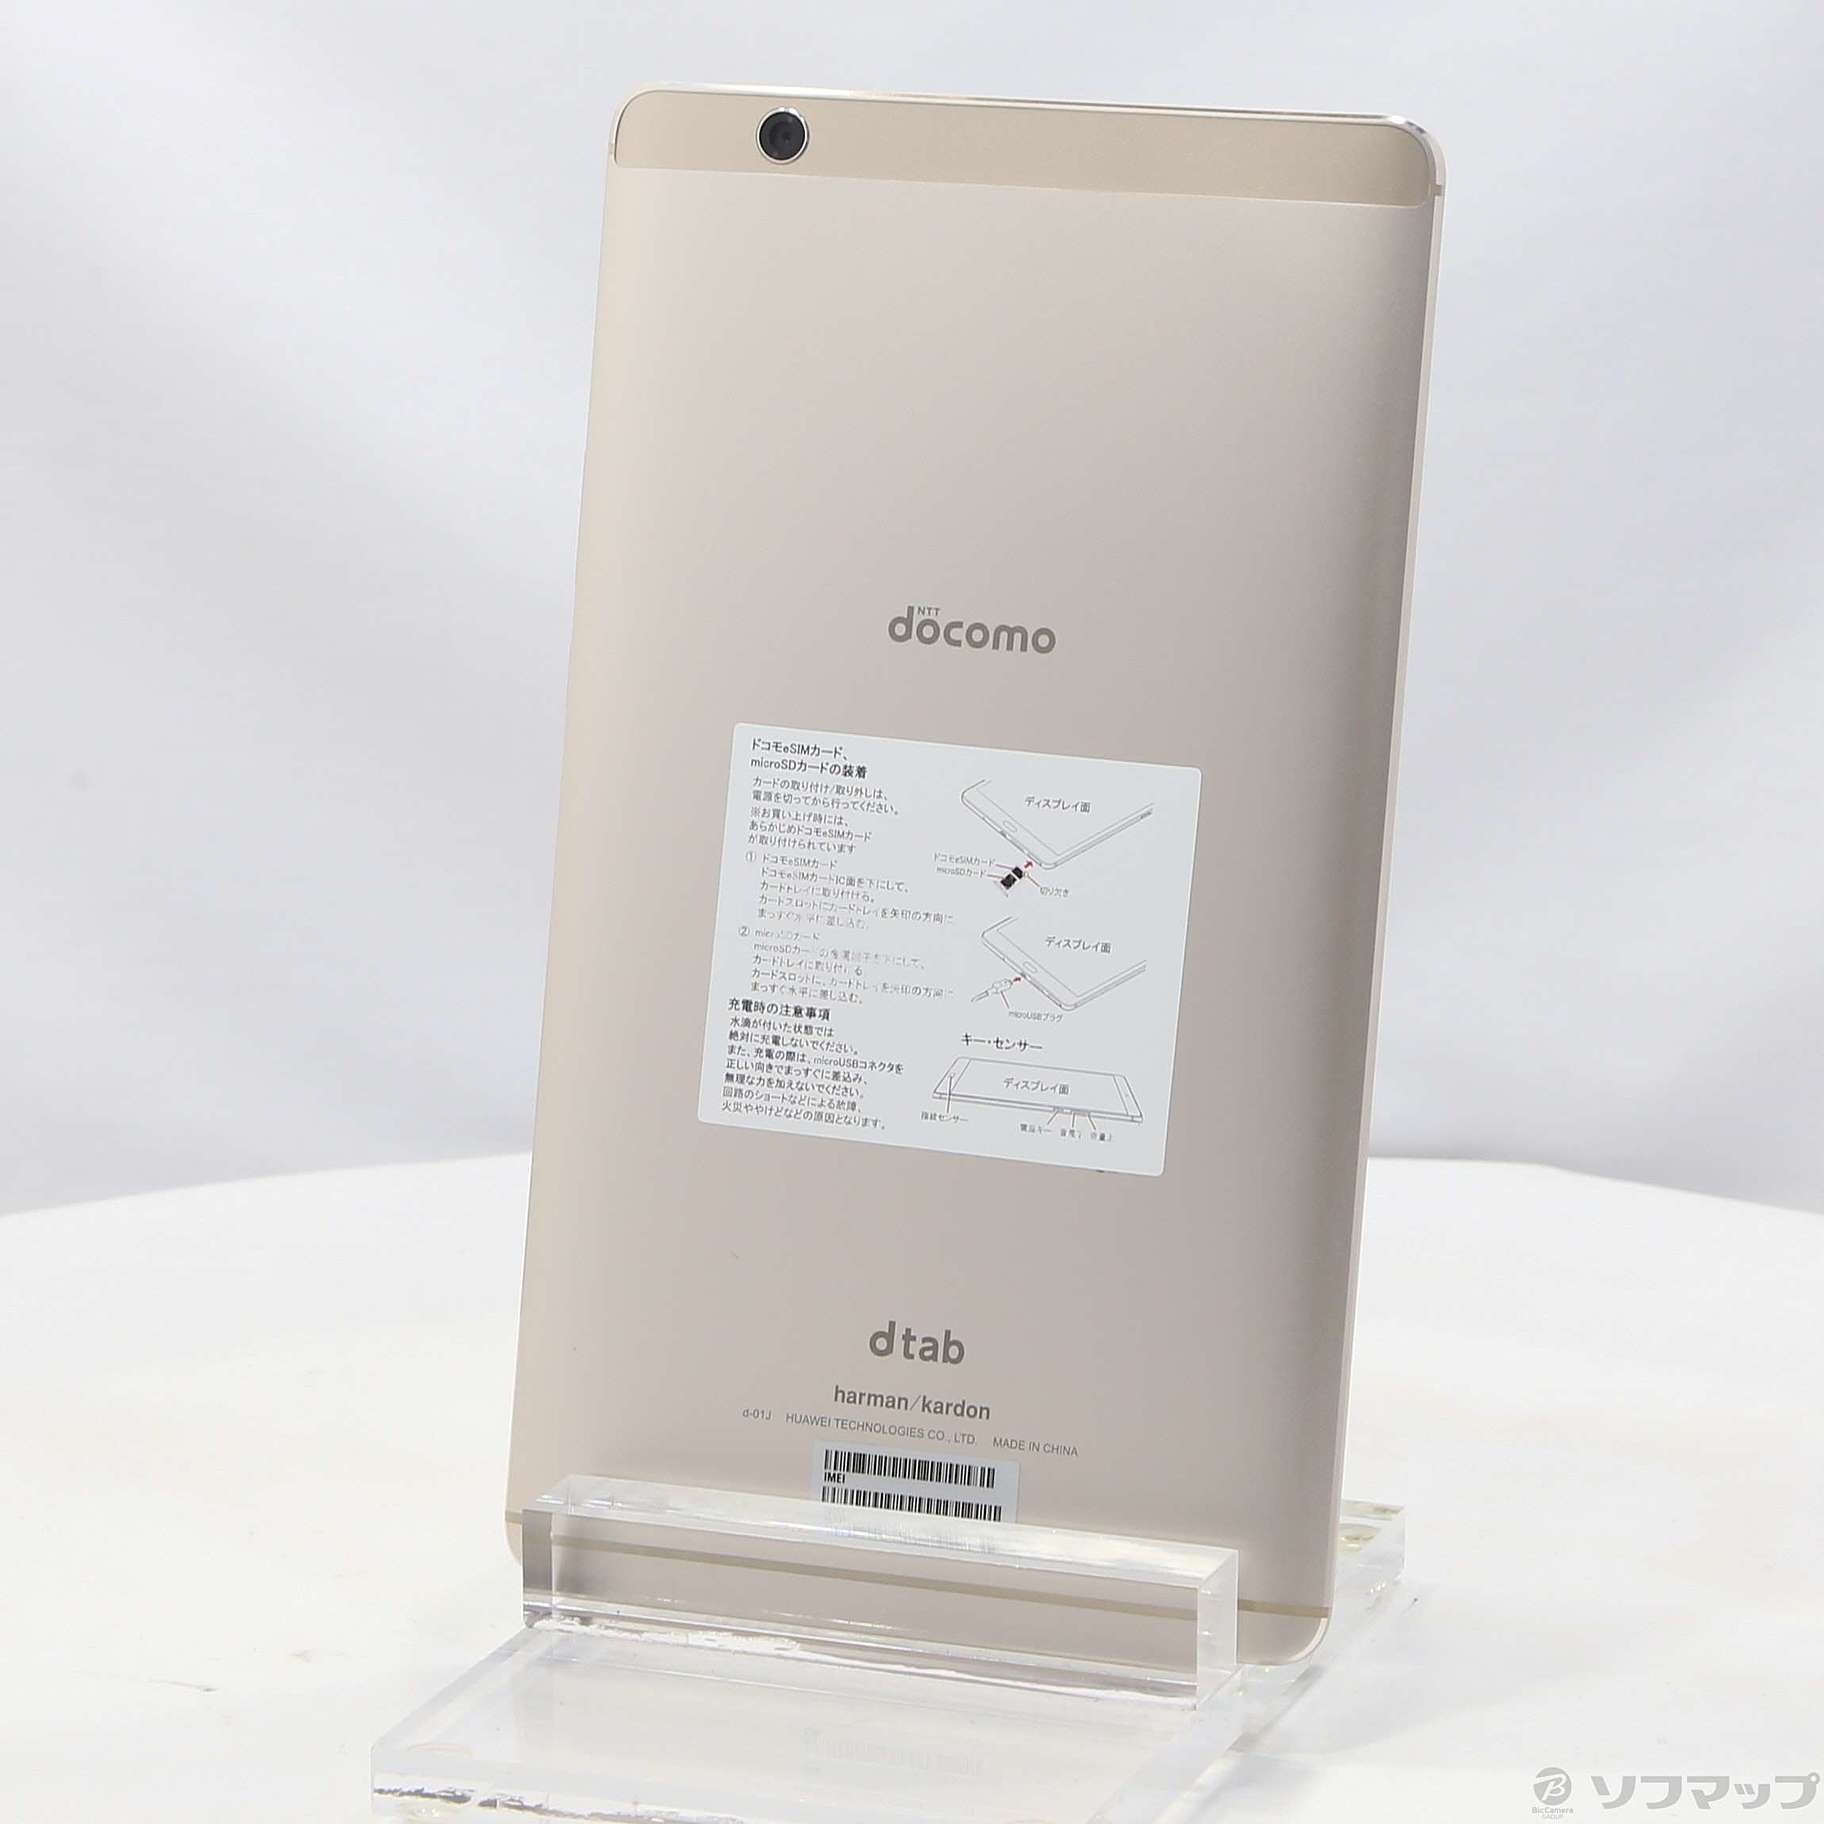 docomo Huawei dtab Compact d-01J Gold